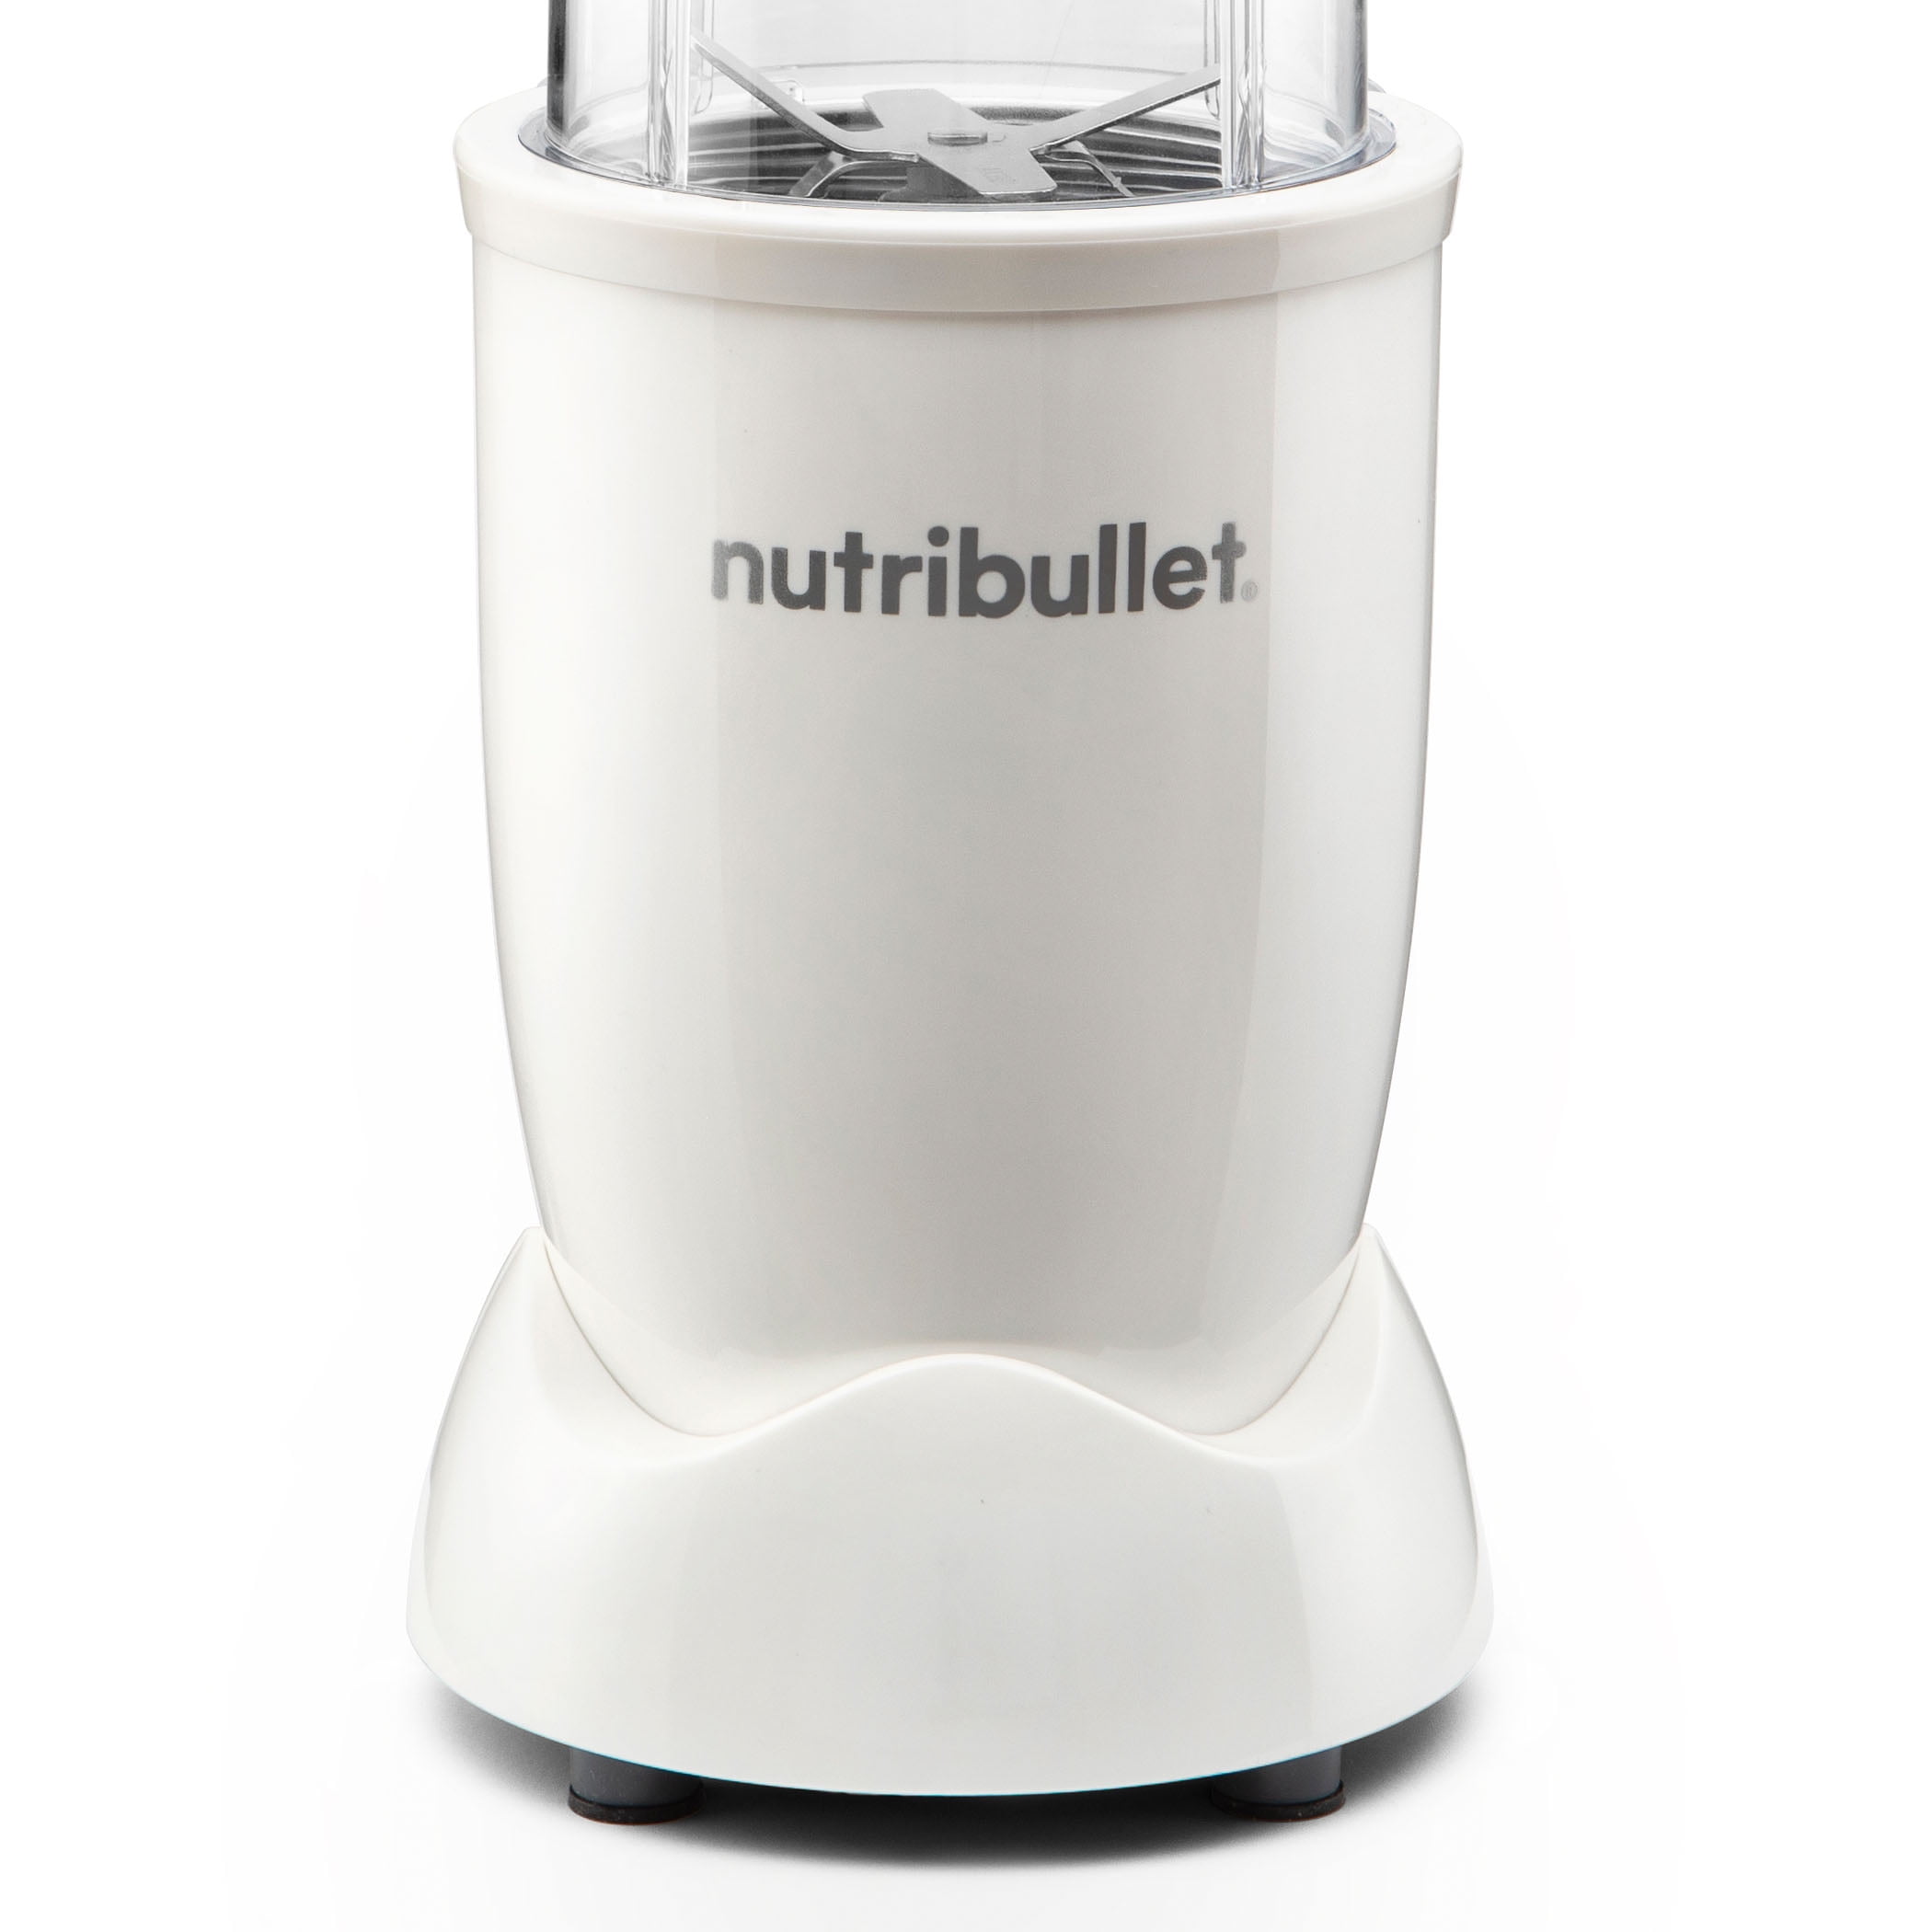 Nutribullet NB50500 Ultra Personal Blender - Gray